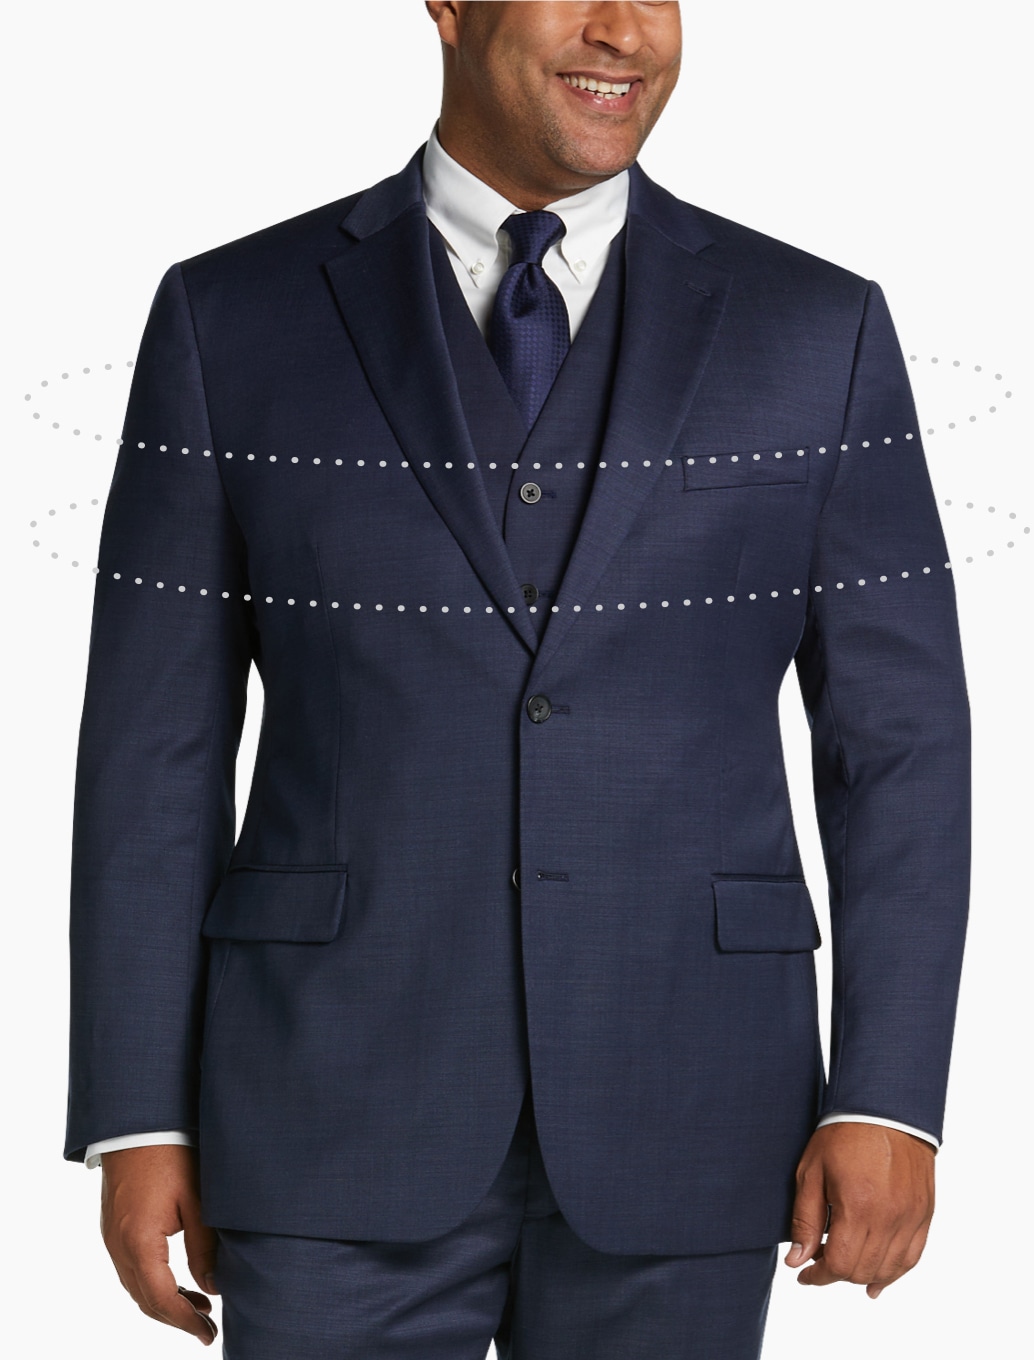 dokly Men's Suit Plus Size Men's Plaid Casual Suit Jacket Plus Size Big  Belly Men's Formal Suit,Gray,XL at Amazon Men's Clothing store